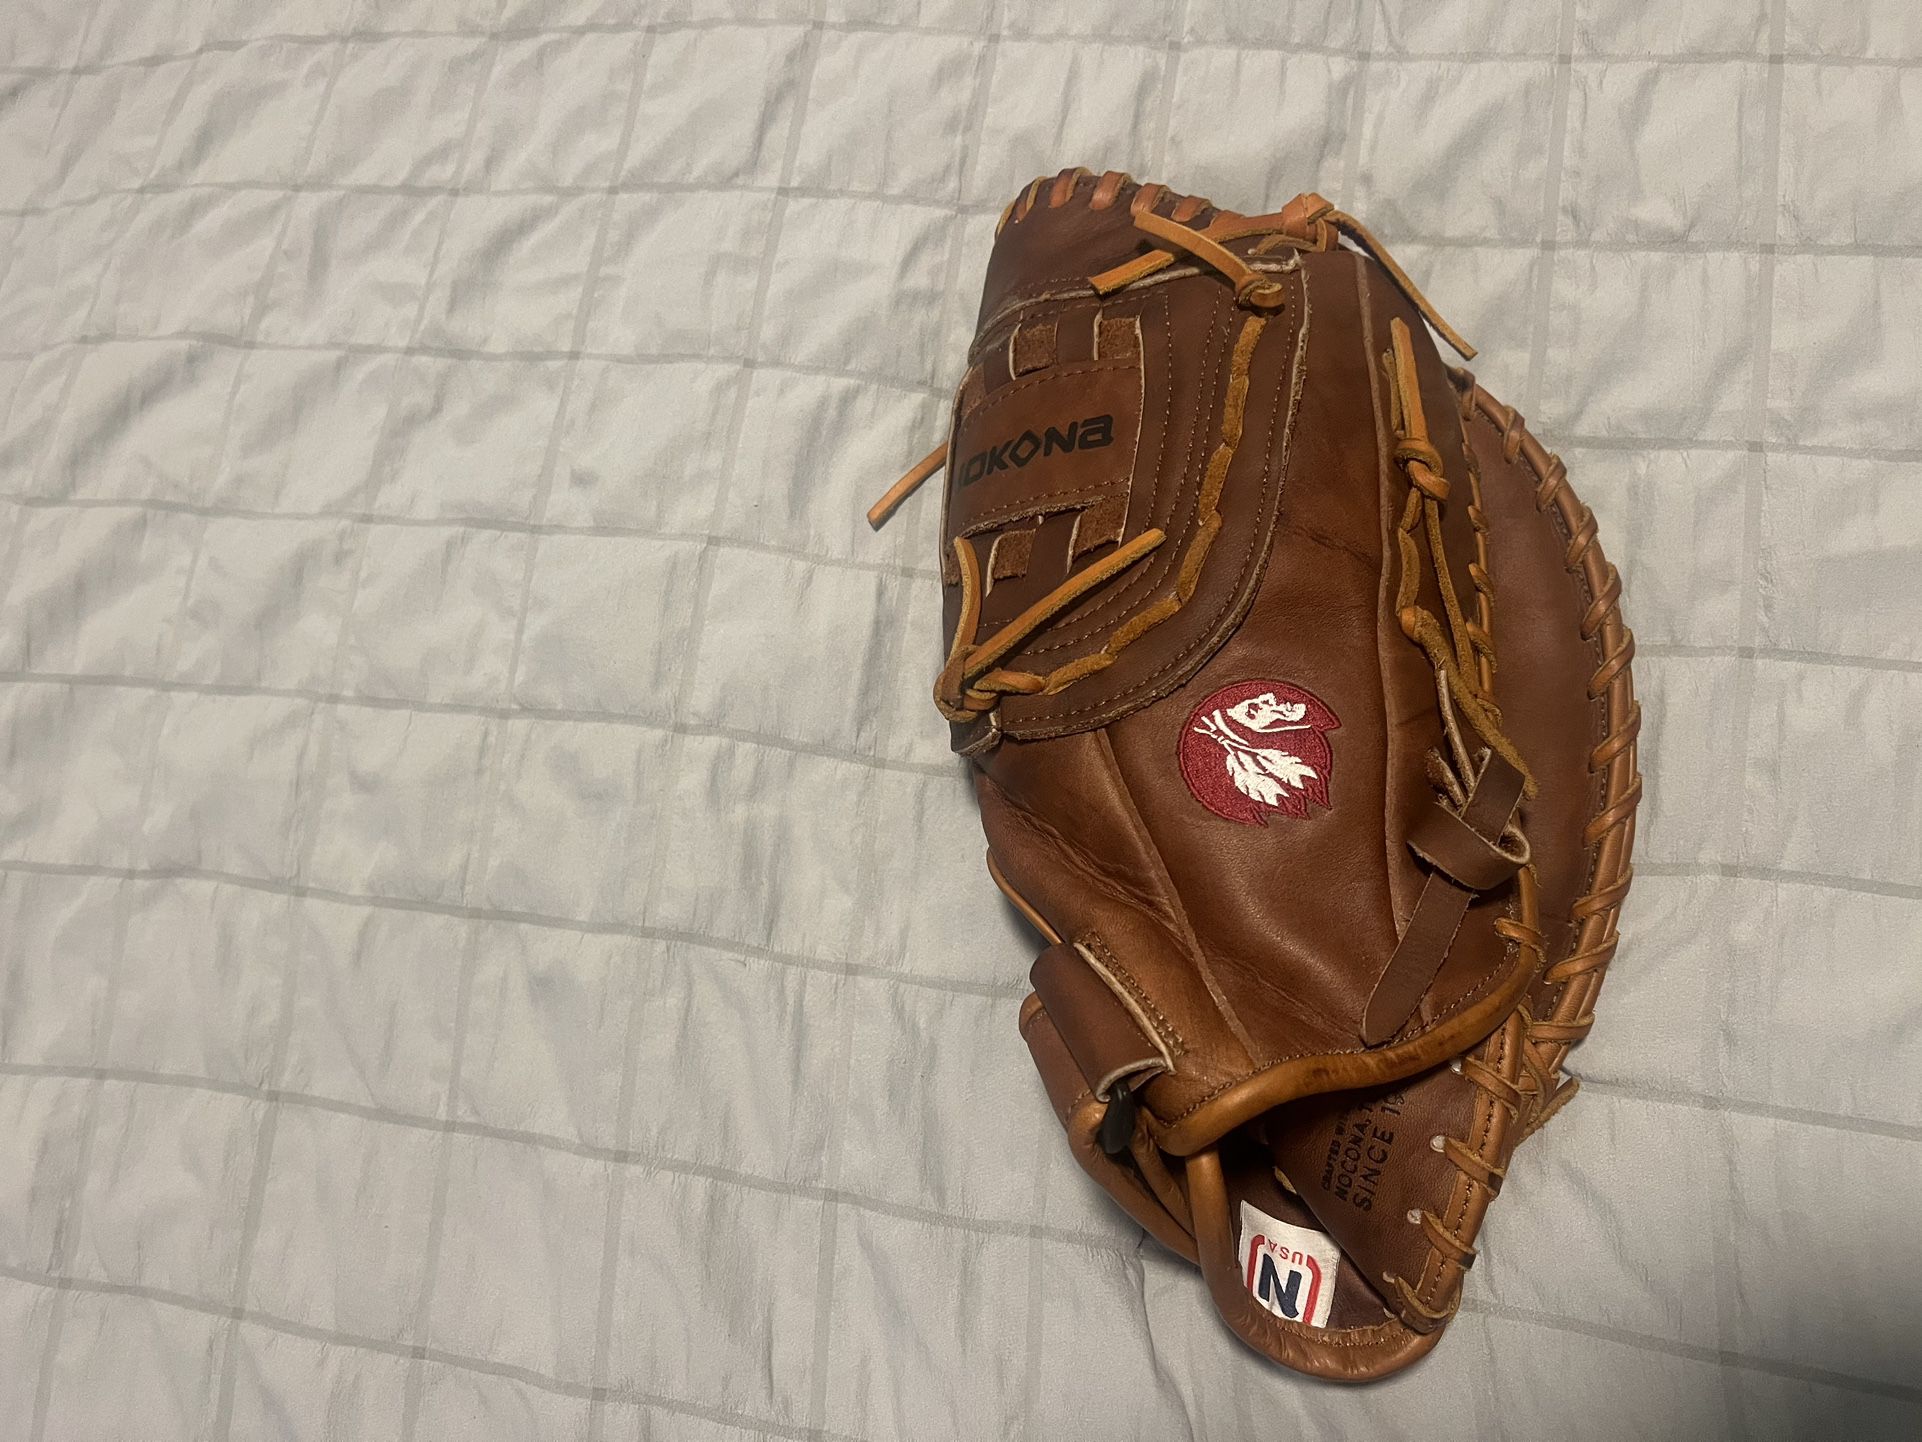 NOKONA 14” first basement glove baseball or softball glove